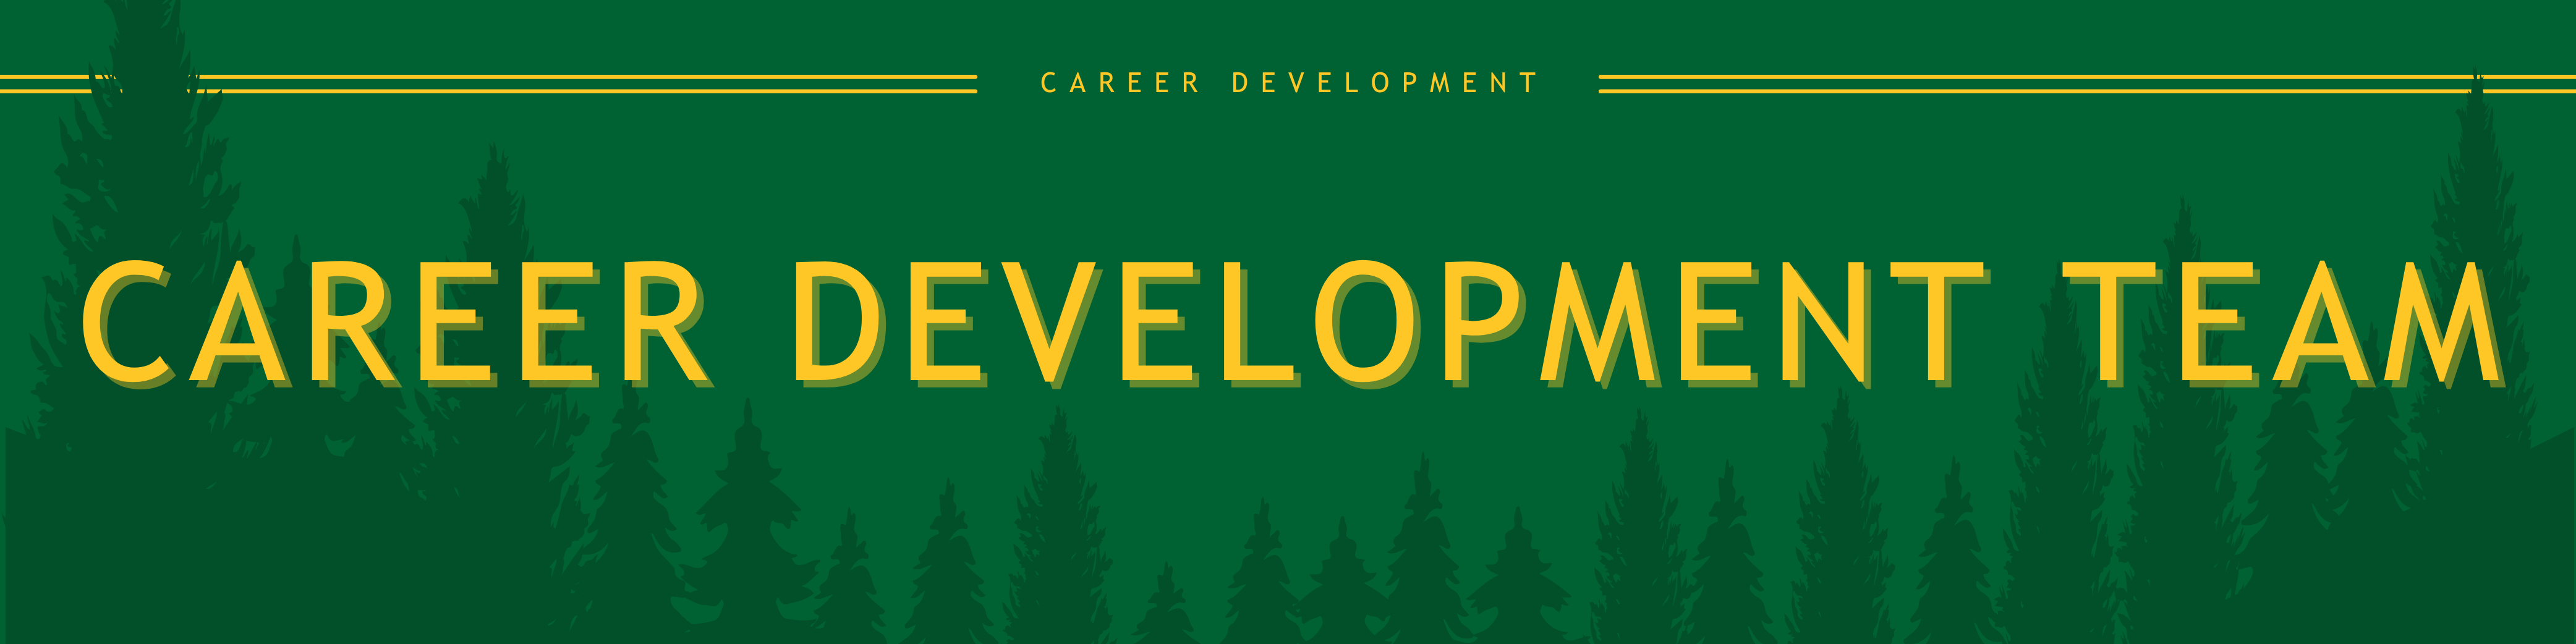 Career Development Team Banner